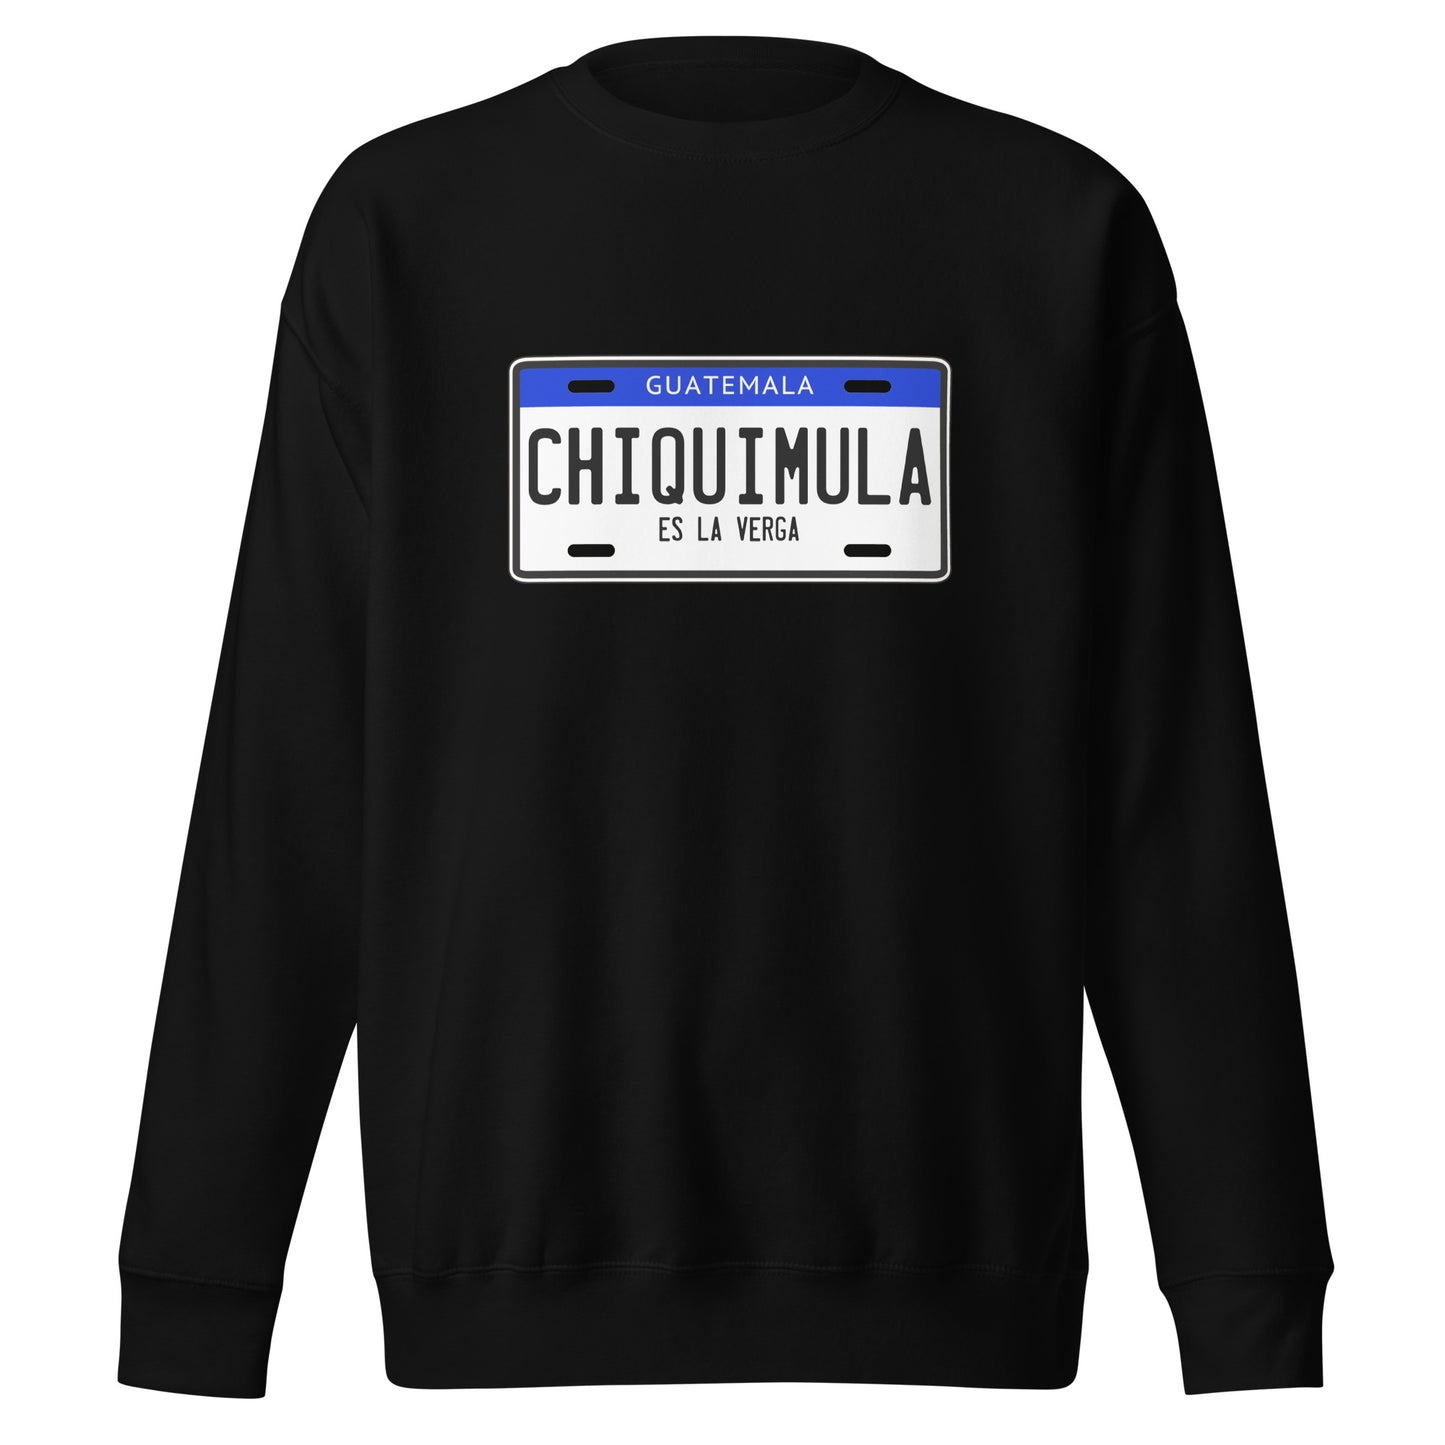 Suéter de Chiquimula es la mera V... ,Descubre calidad excepcional y estampados duraderos. Encuentra estilo y orgullo en cada prenda. Compra ahora!